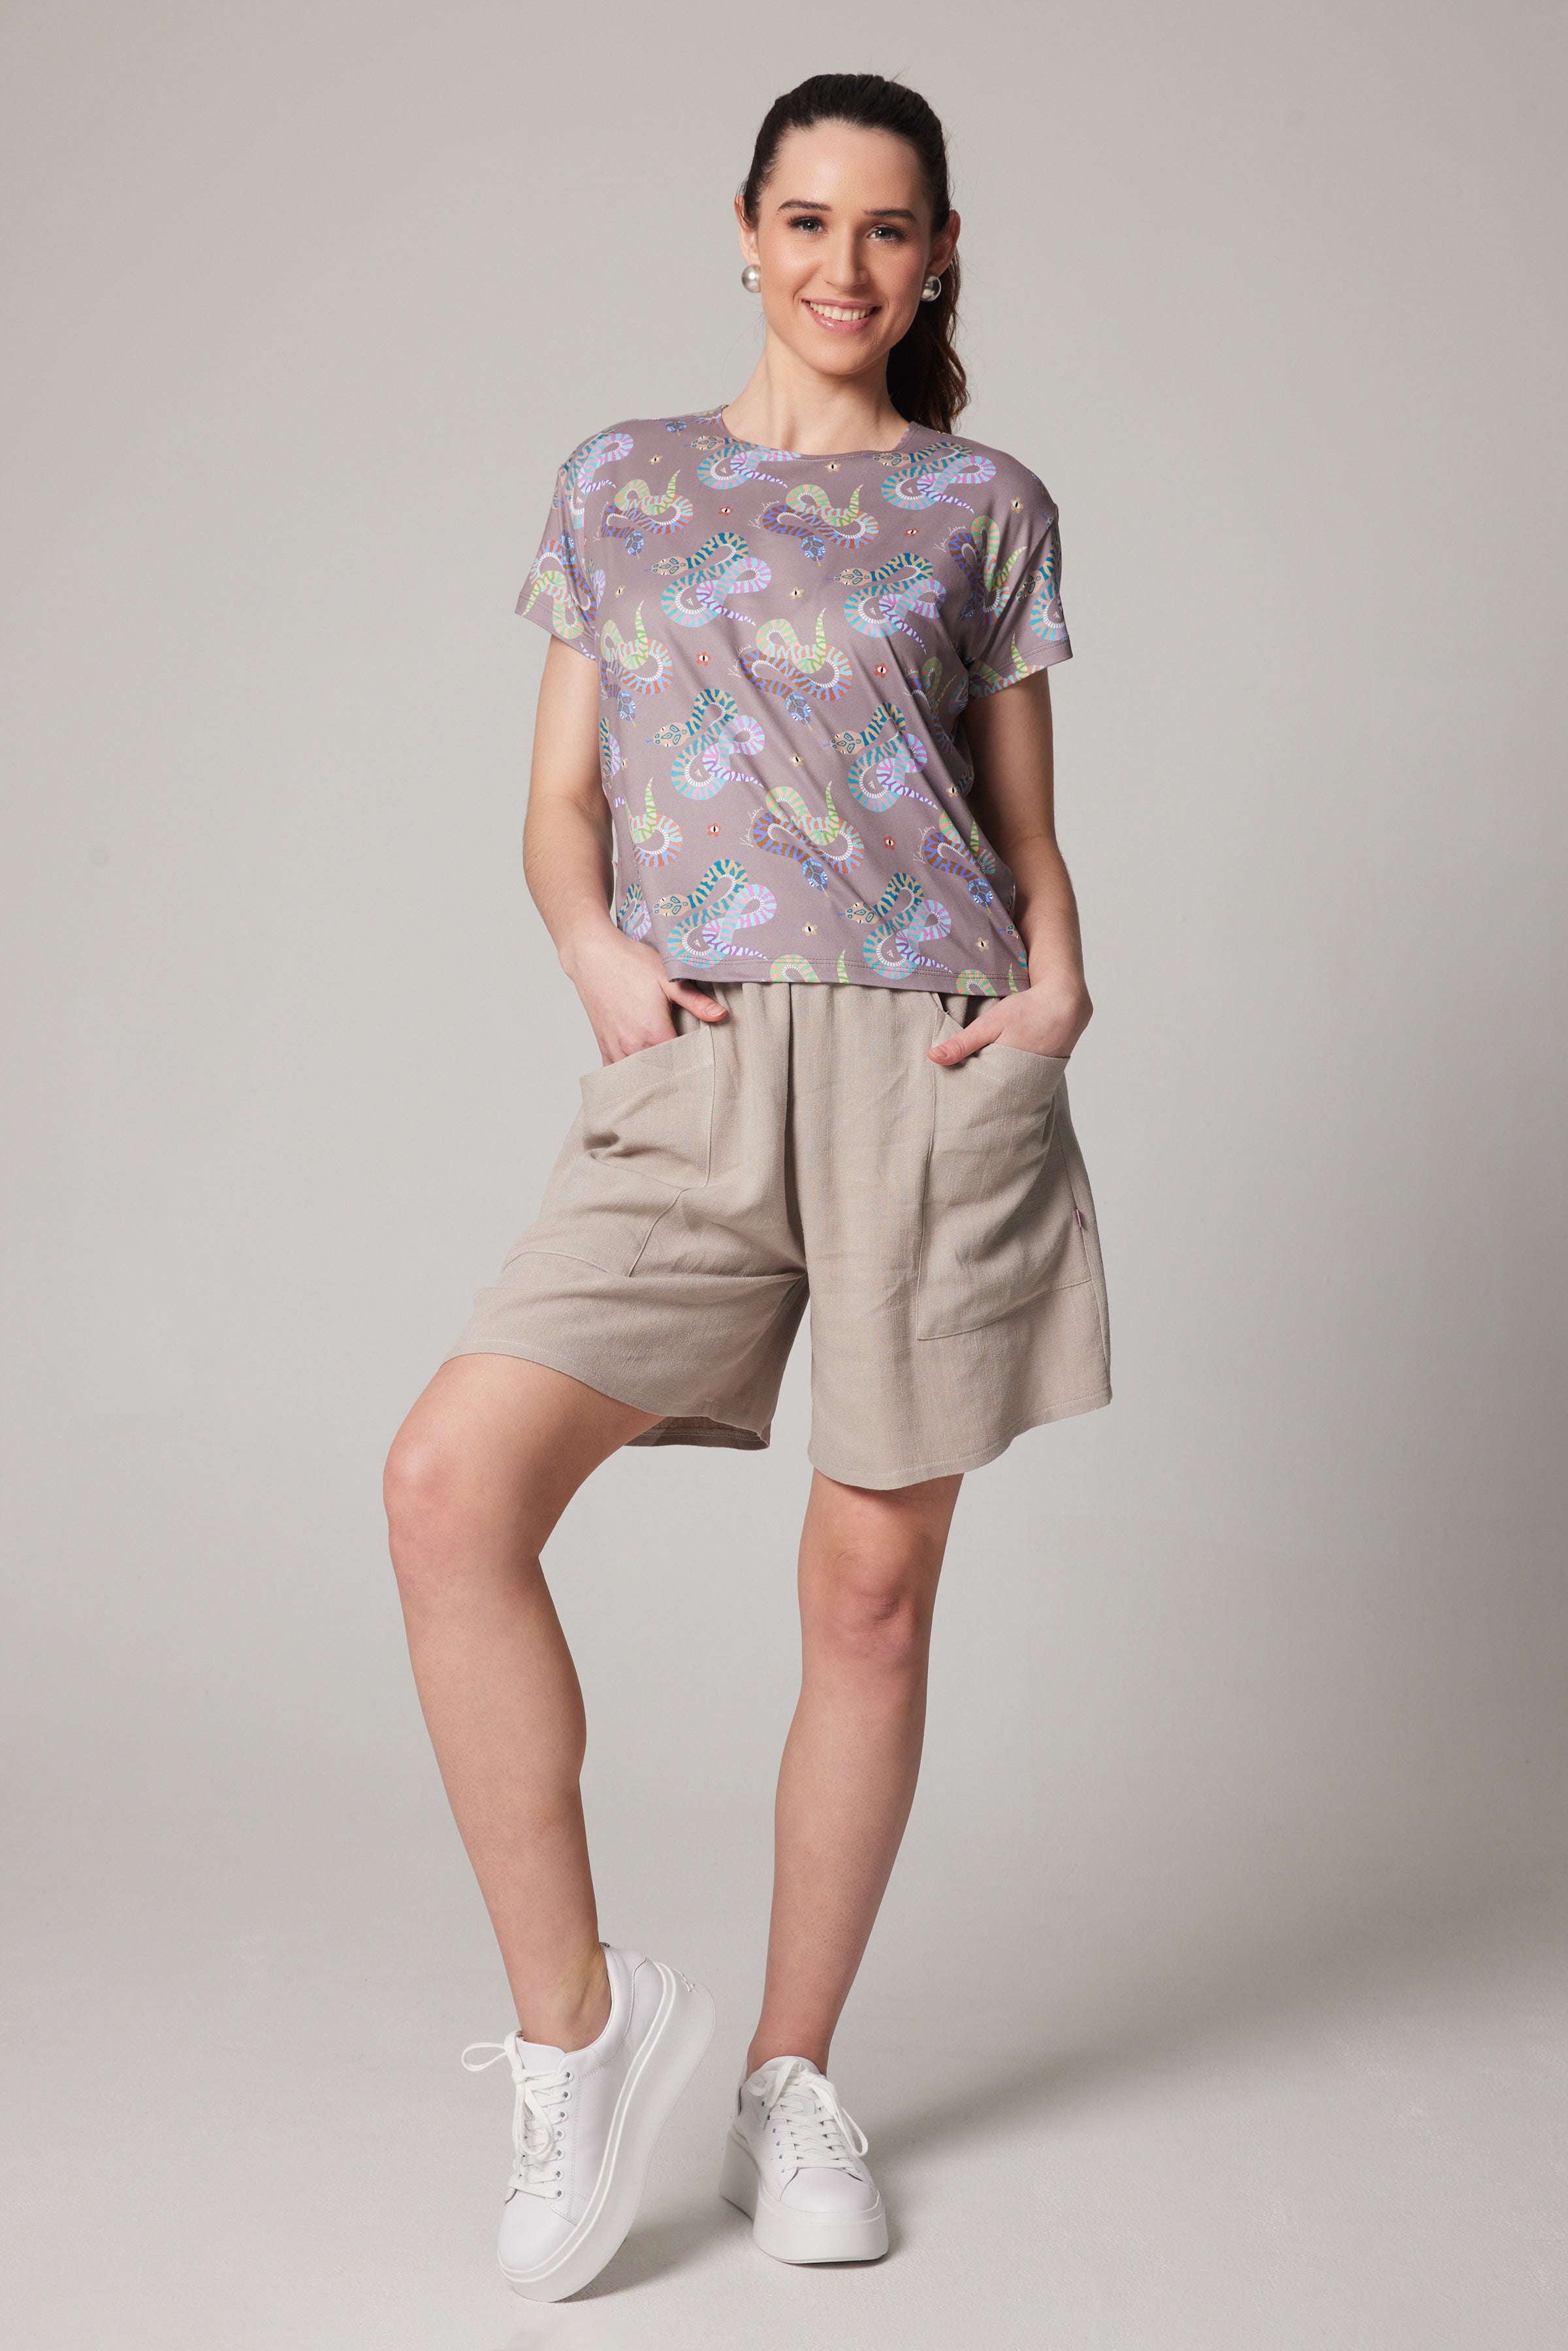 Linen Shorts - Beige